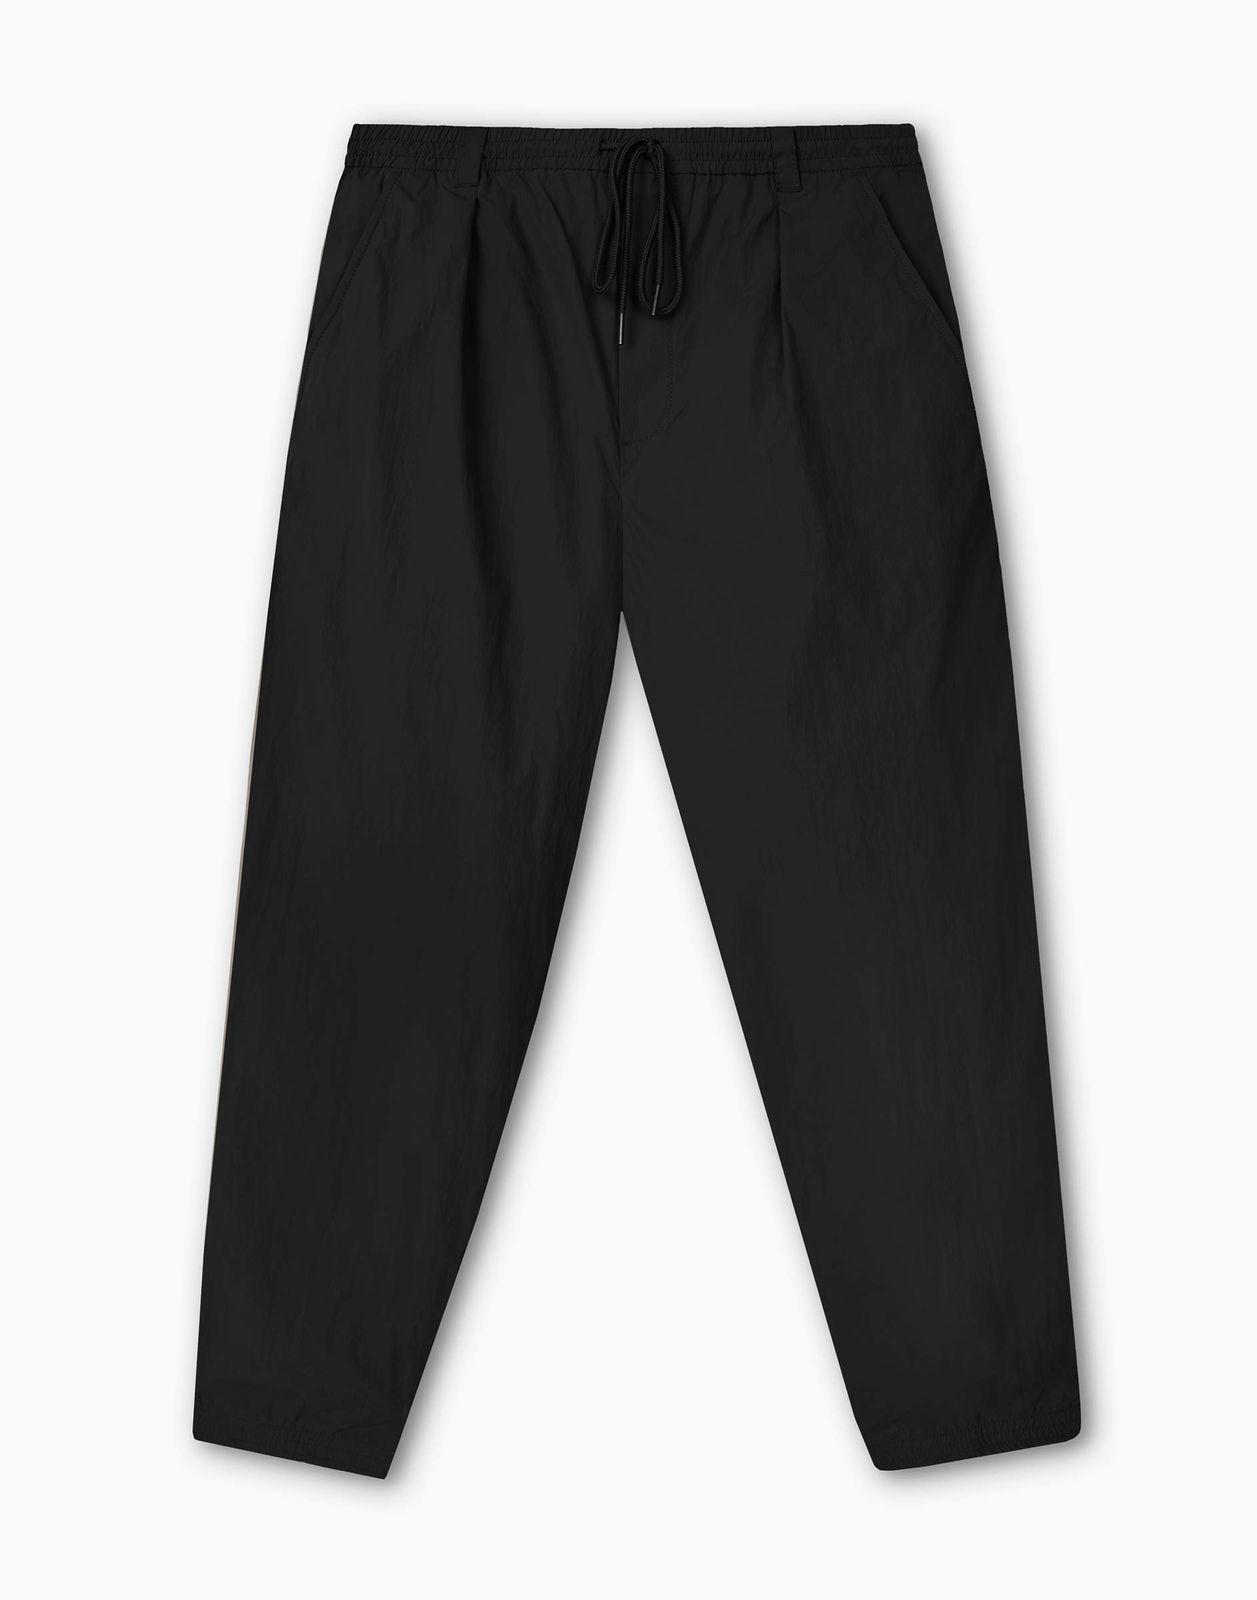 Брюки мужские Gloria Jeans BPT003489 черный XS/176